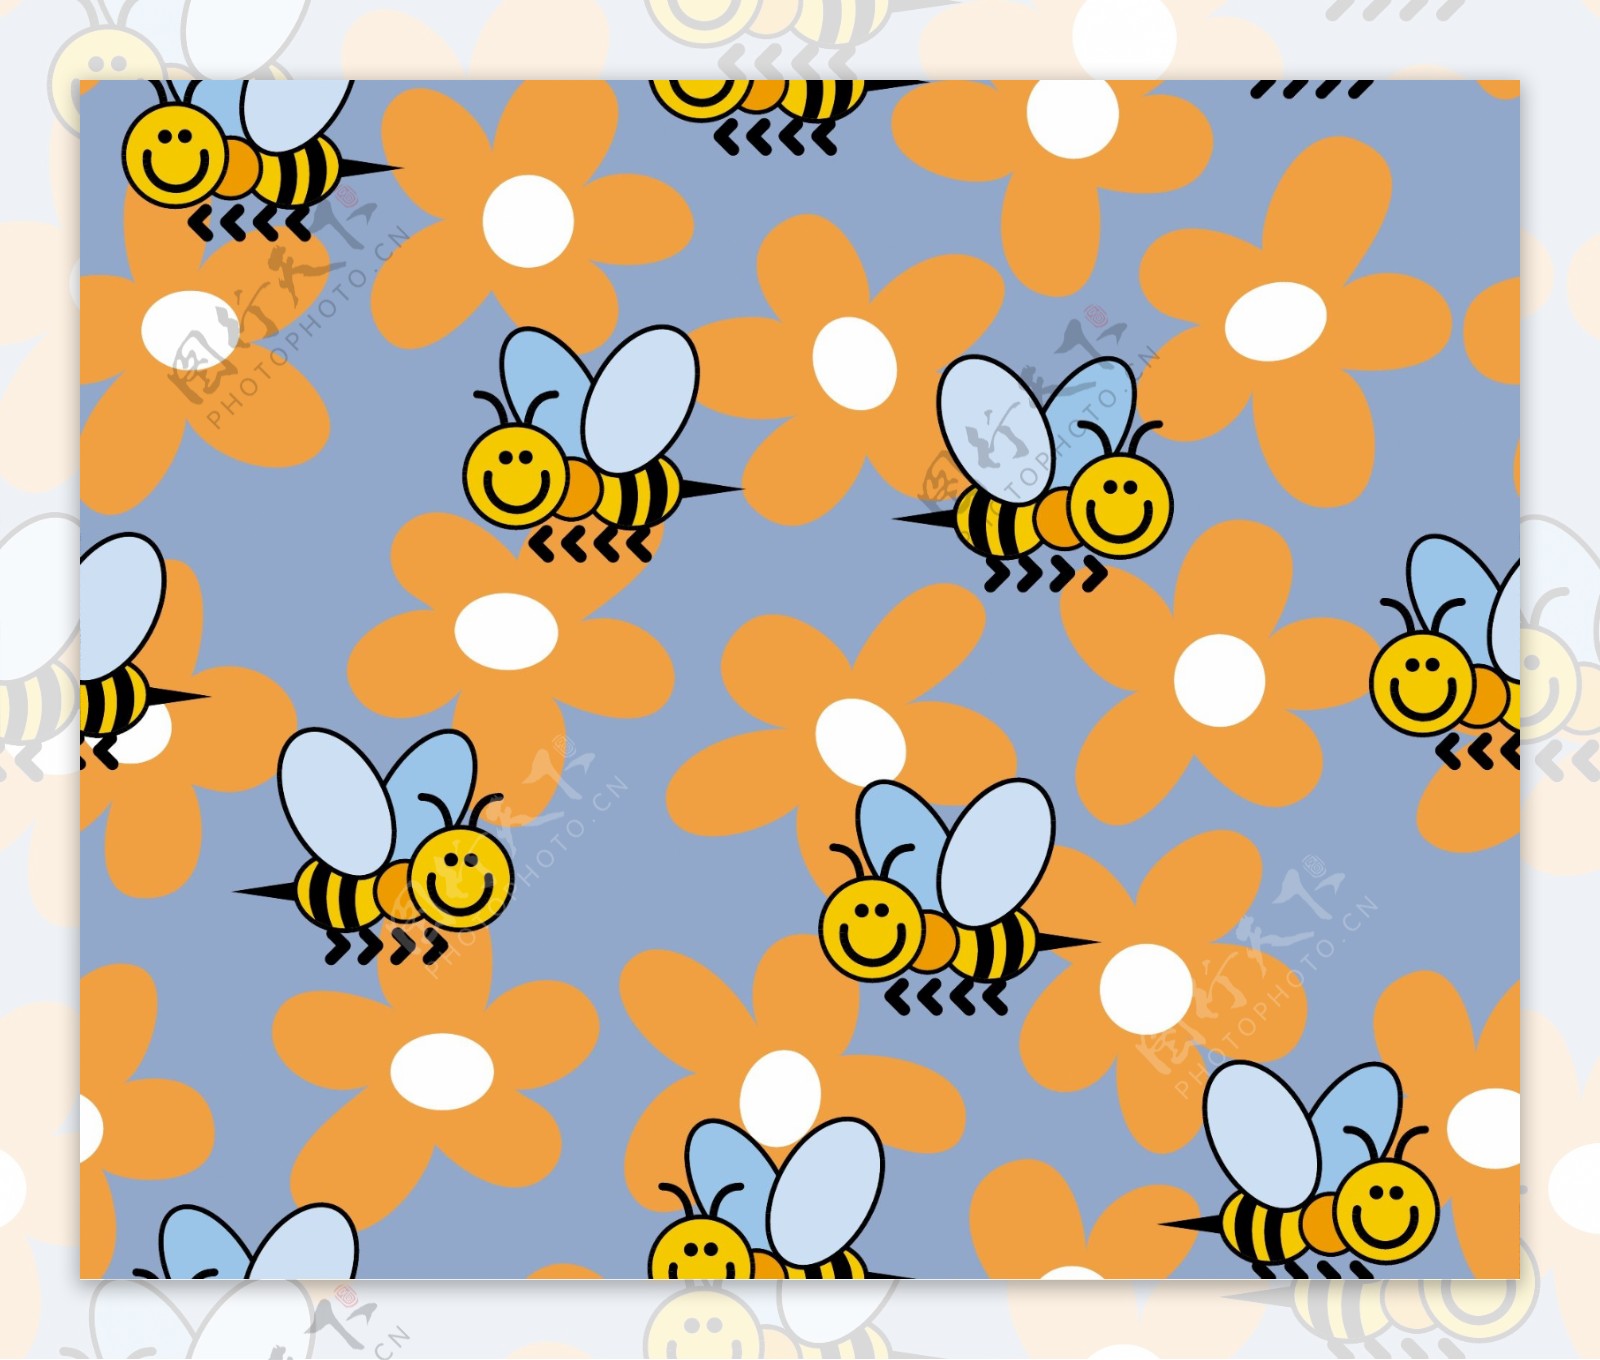 可爱蜜蜂花朵连续背景矢量素材2